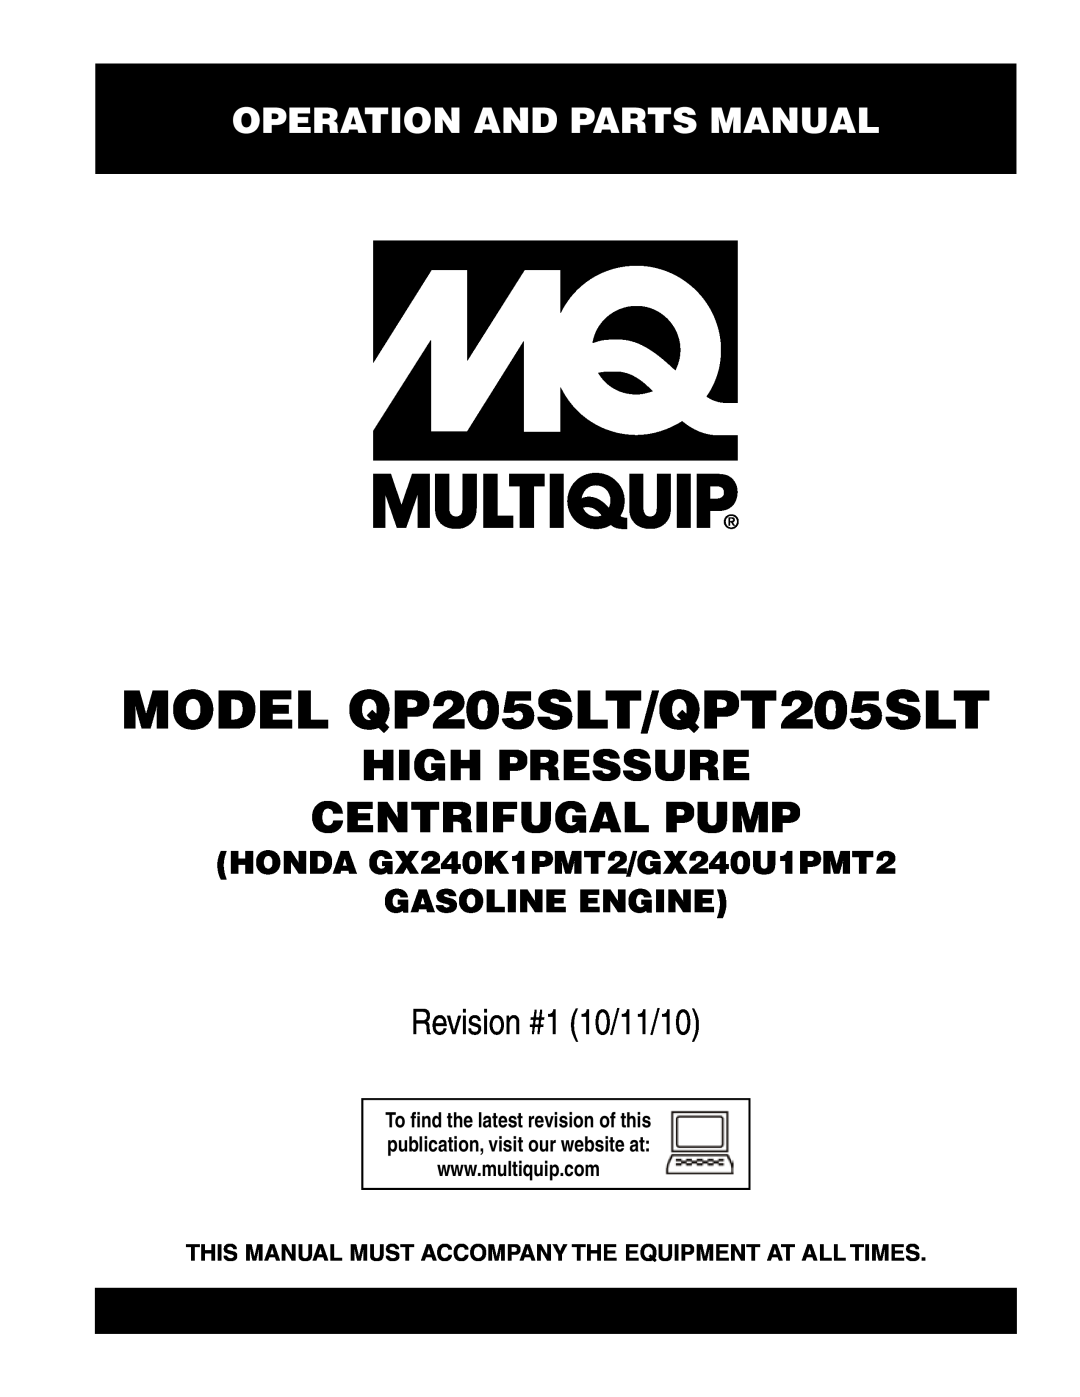 Multiquip manual Operation and Parts Manual, MODEL QP205SLT/QPT205SLT, High Pressure Centrifugal Pump 